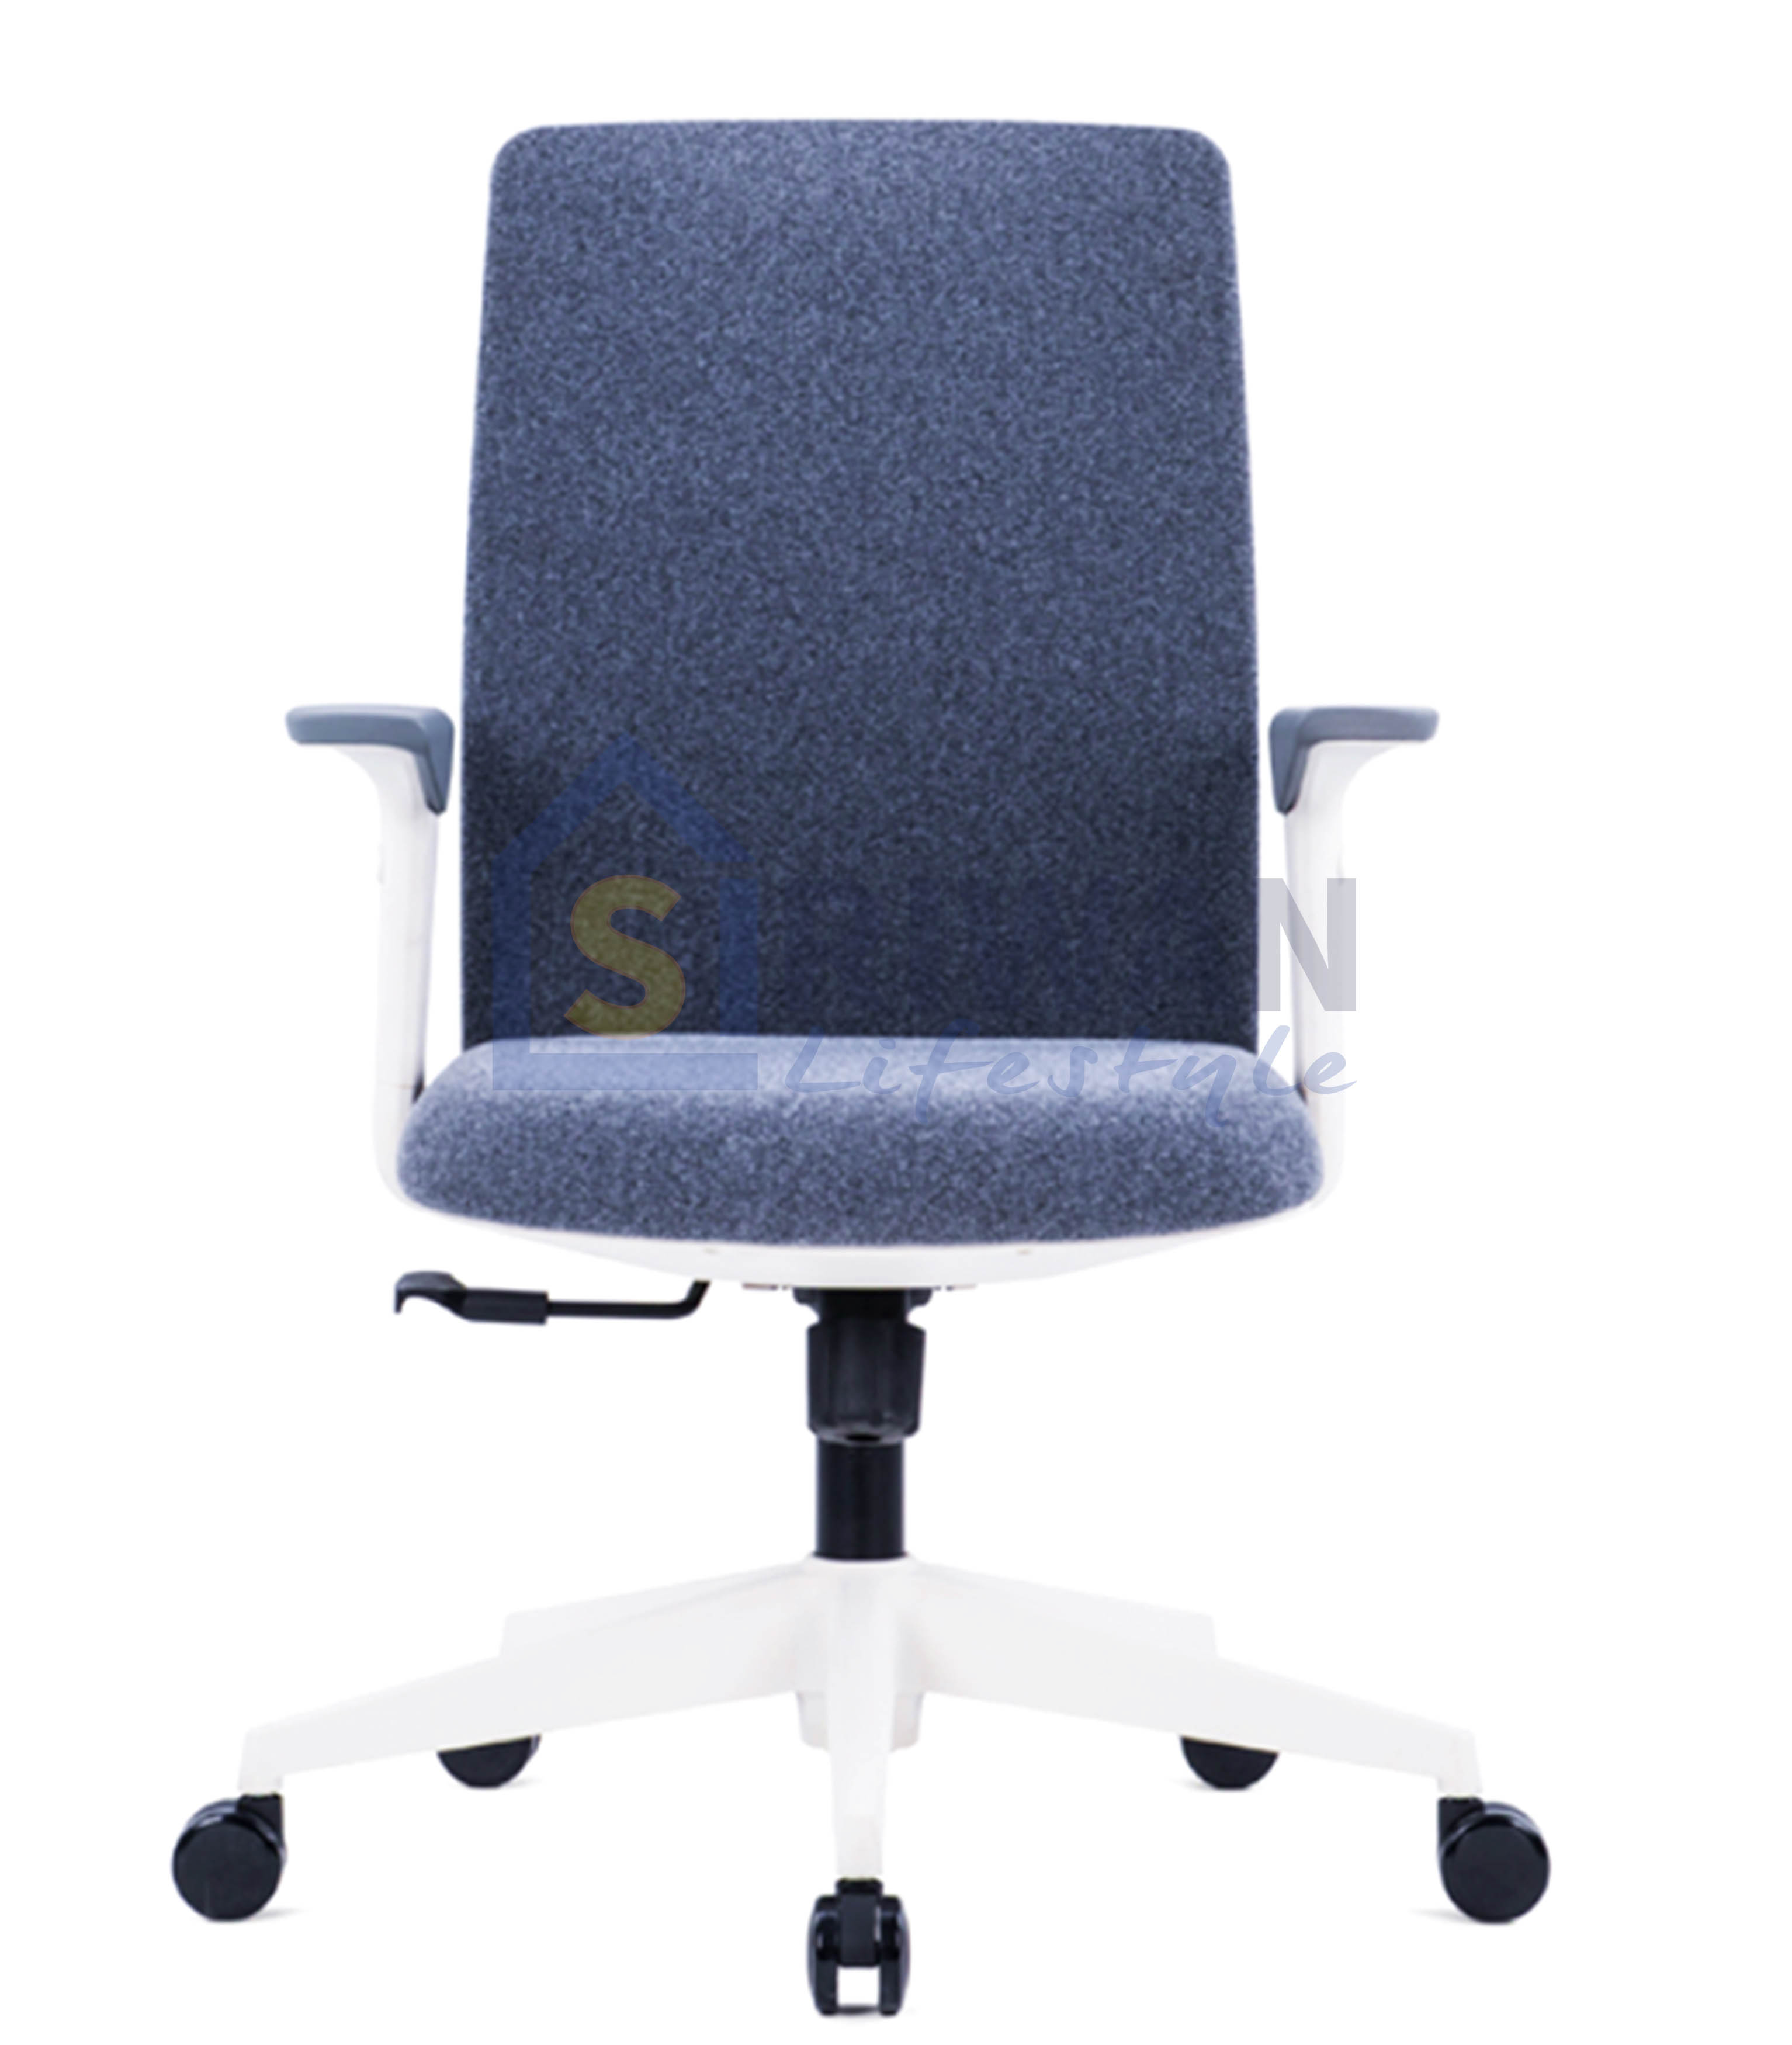 SITZONE เก้าอี้สำนักงาน เก้าอี้ทำงาน ปรับระดับความสูงเก้าอี้และที่ท้าวแขนได้ เบาะปรับเอนได้ รับน้ำหนักได้ 125กก. รุ่น CH330BBS